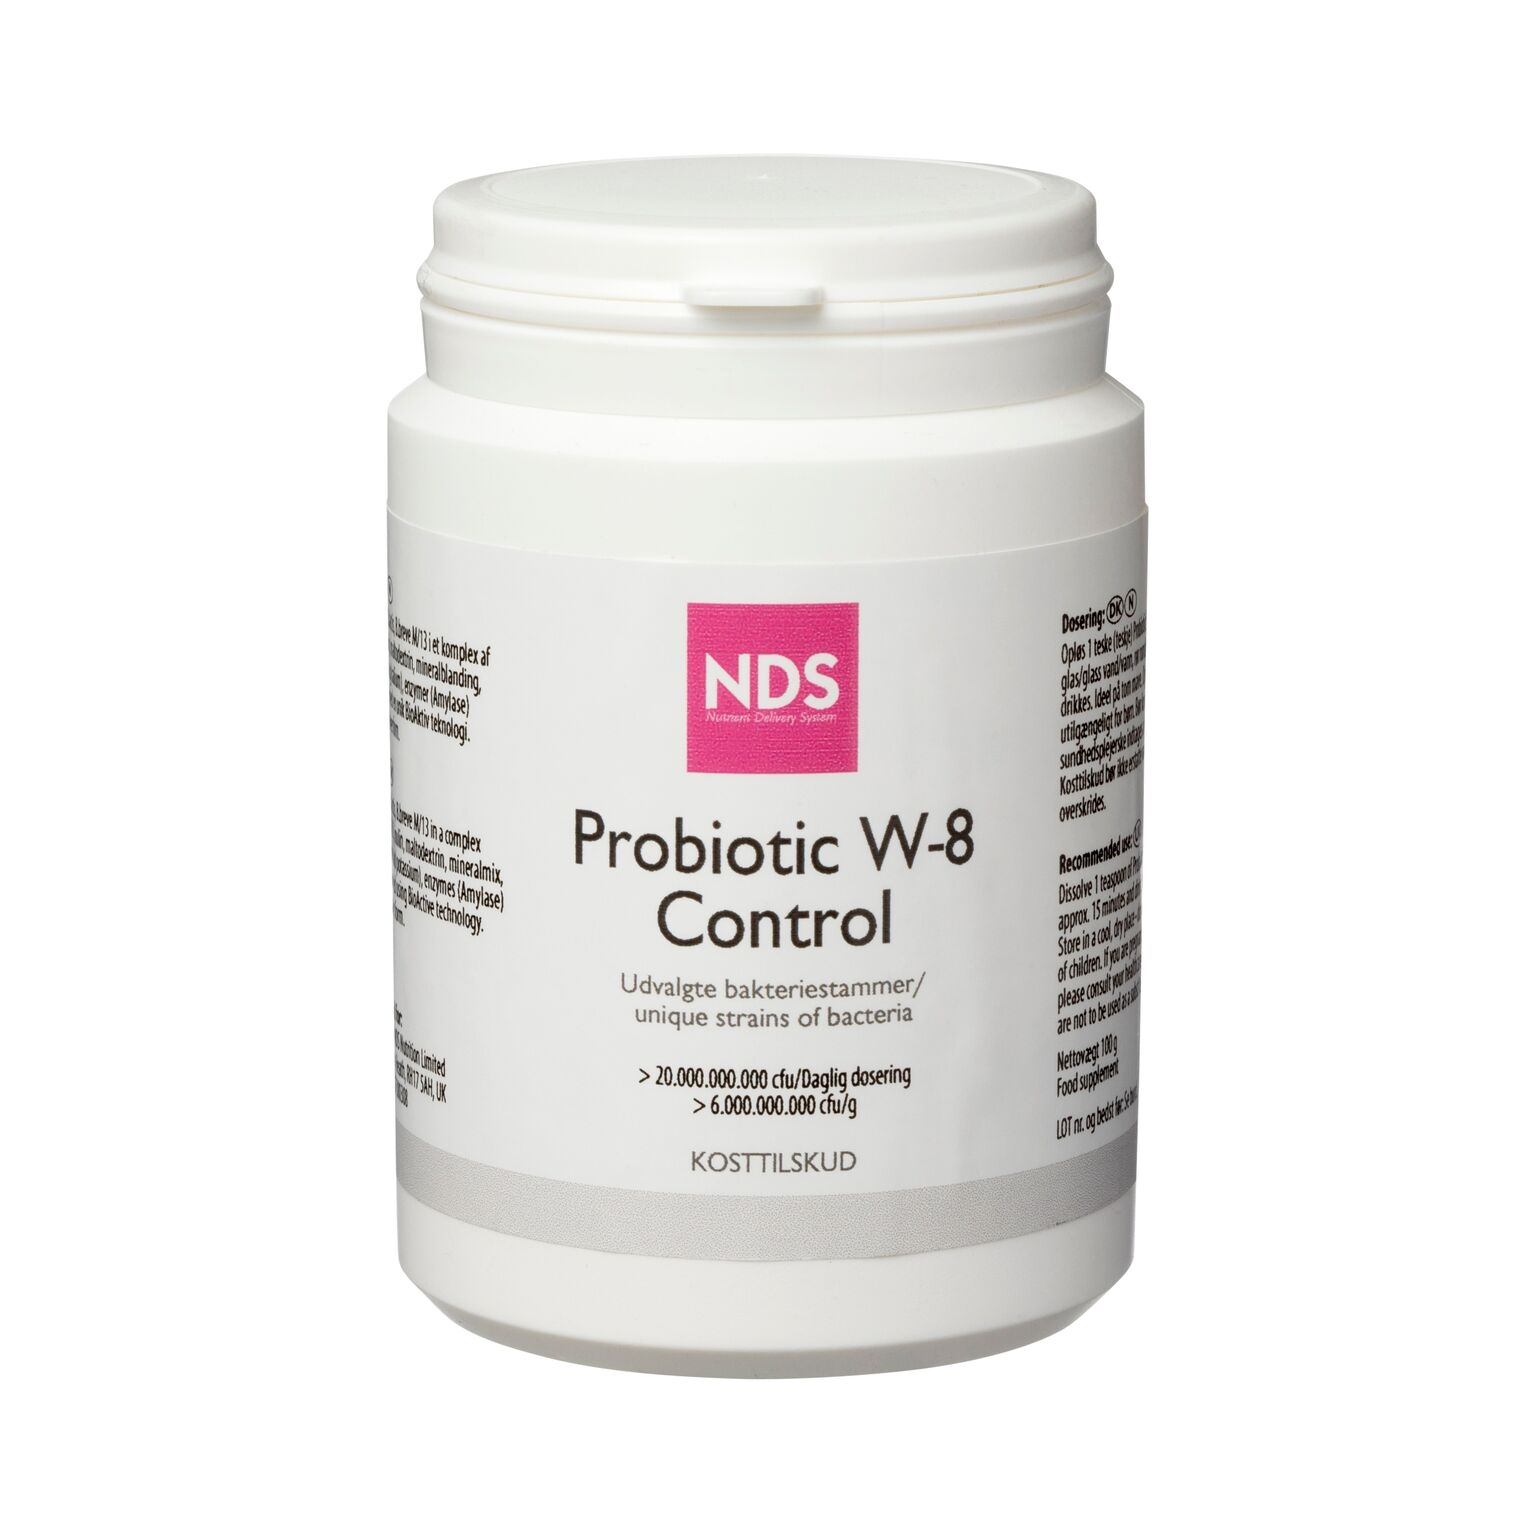 Billede af NDS Probiotic W-8 Control 100 g.